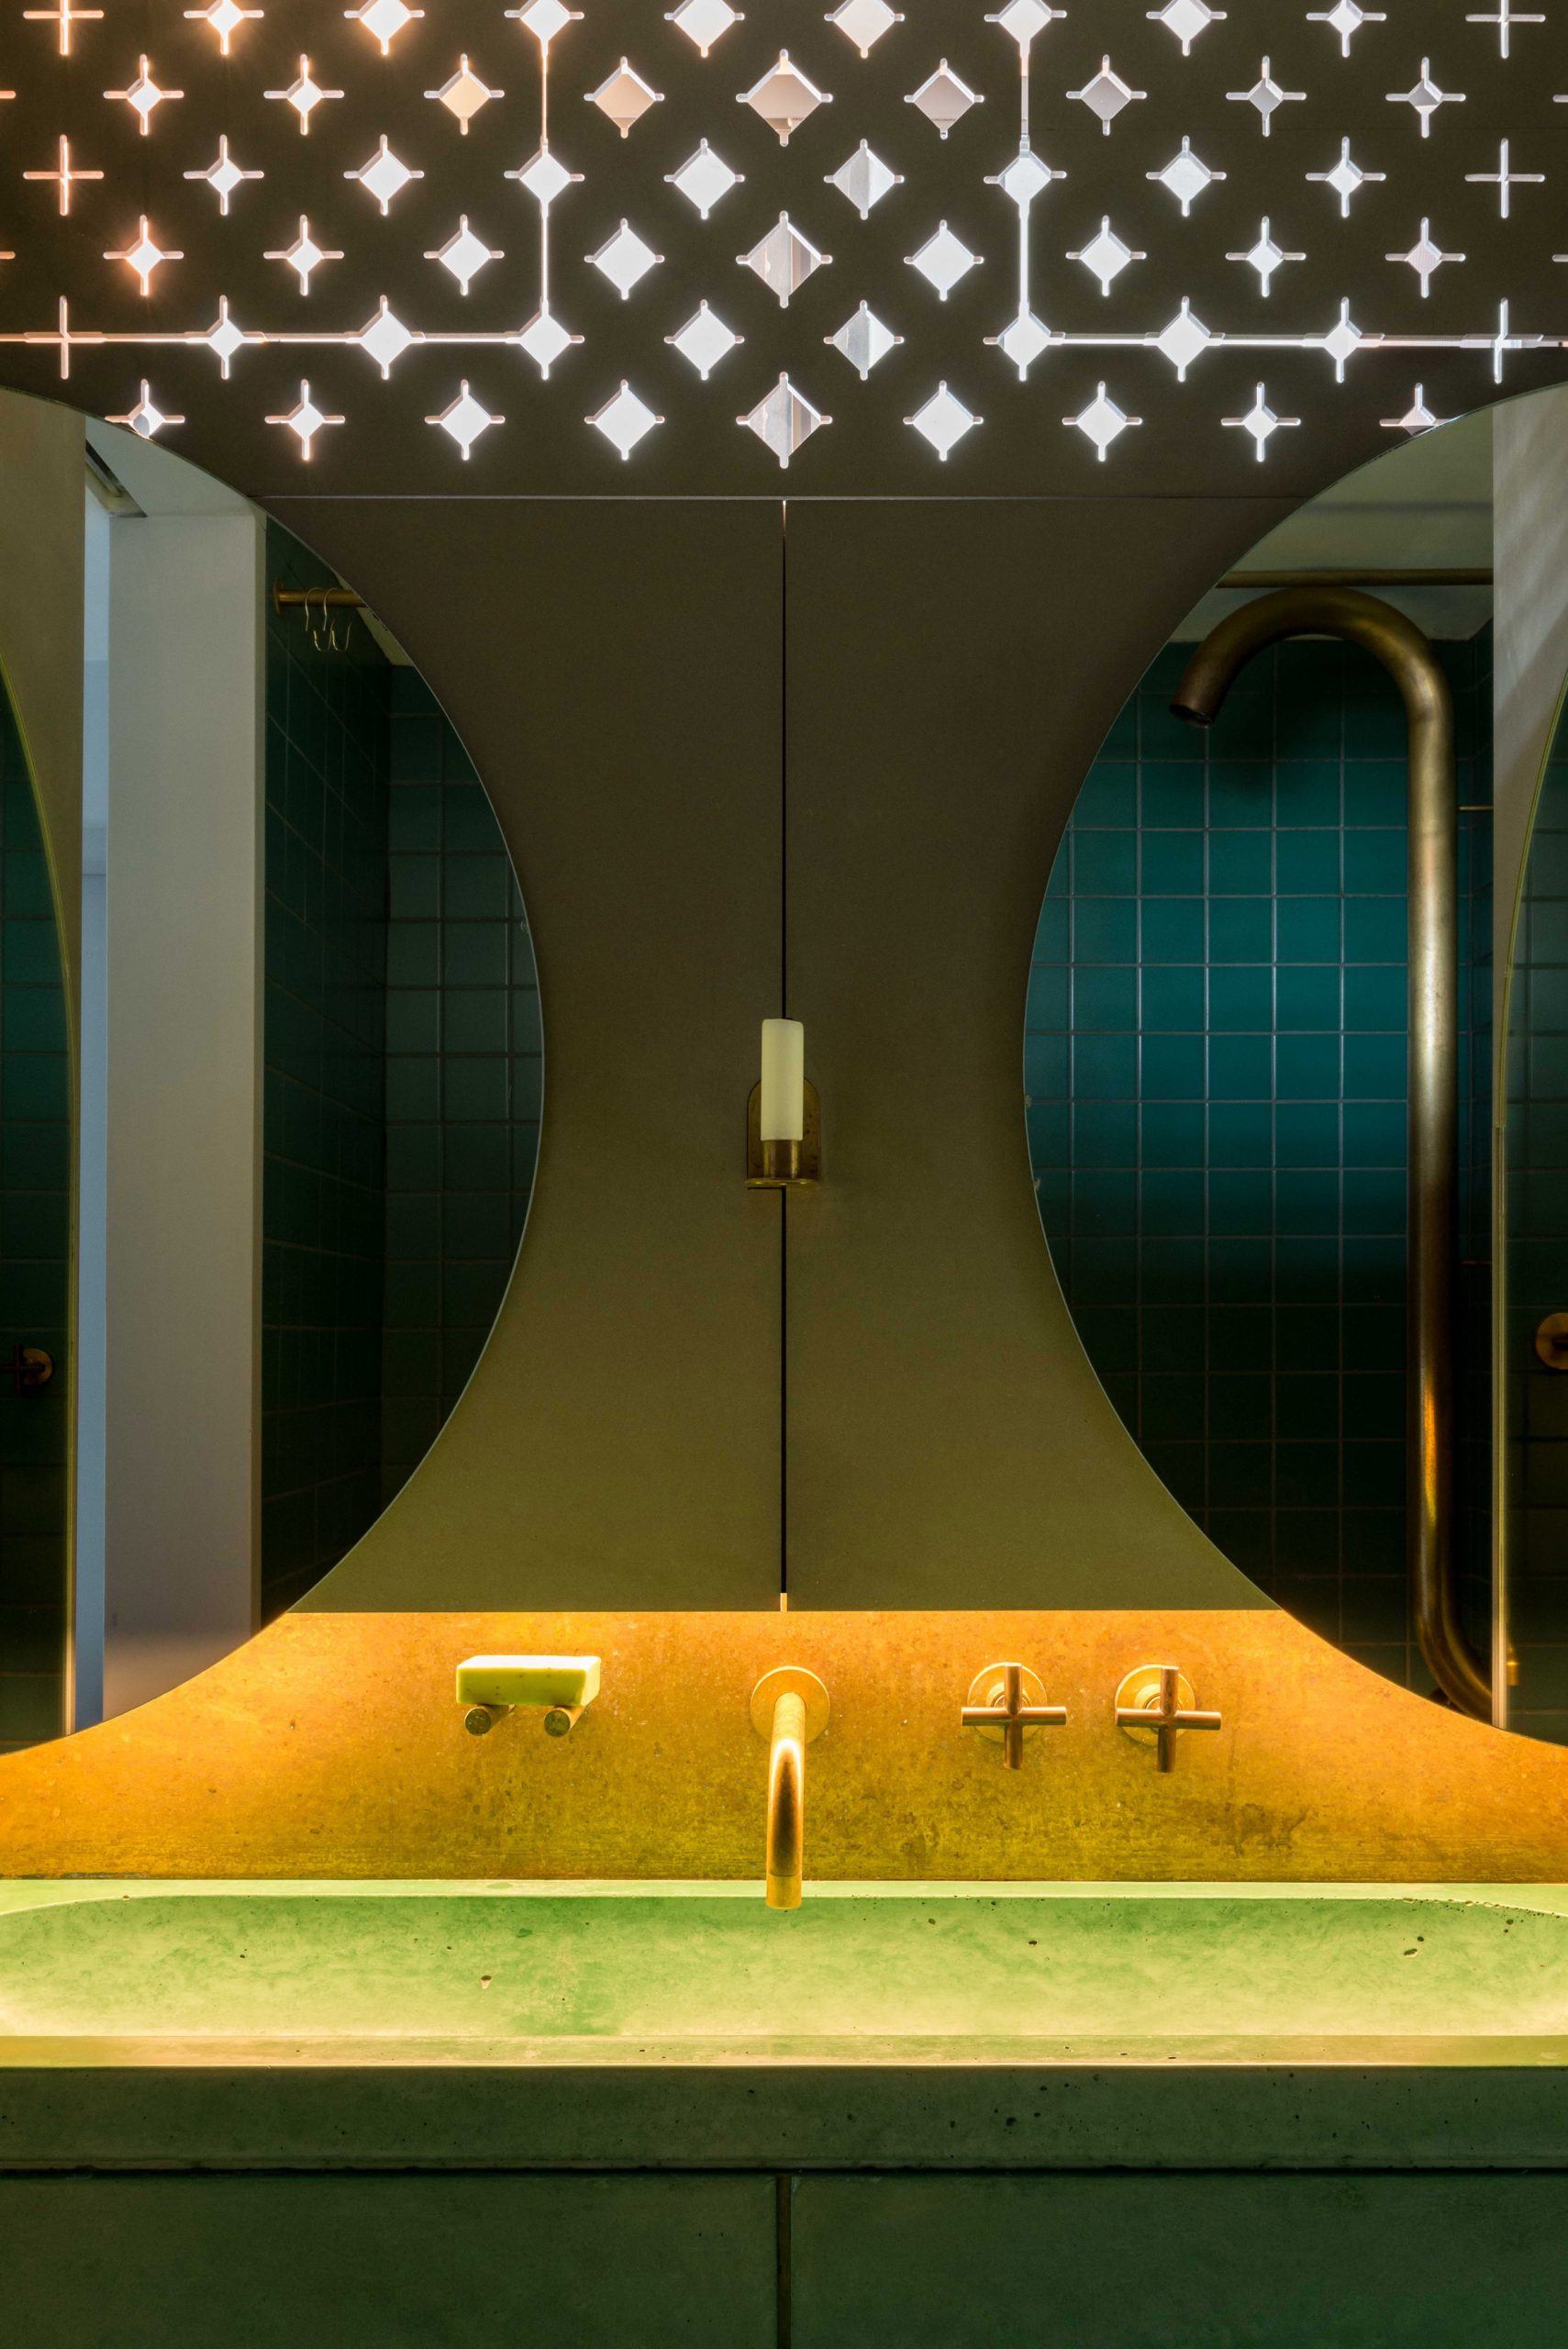 Để trang trí cho bức tường phòng tắm, Ben Allen đã lựa chọn 2 chiếc gương hình bán nguyệt (nửa vầng trăng) và bố trí ngược nhau cho cái nhìn vô cùng lạ mắt và ấn tượng. Cửa chớp đục lỗ cho phép một lượng ánh sáng tự nhiên tràn vào đầy tính nghệ thuật.